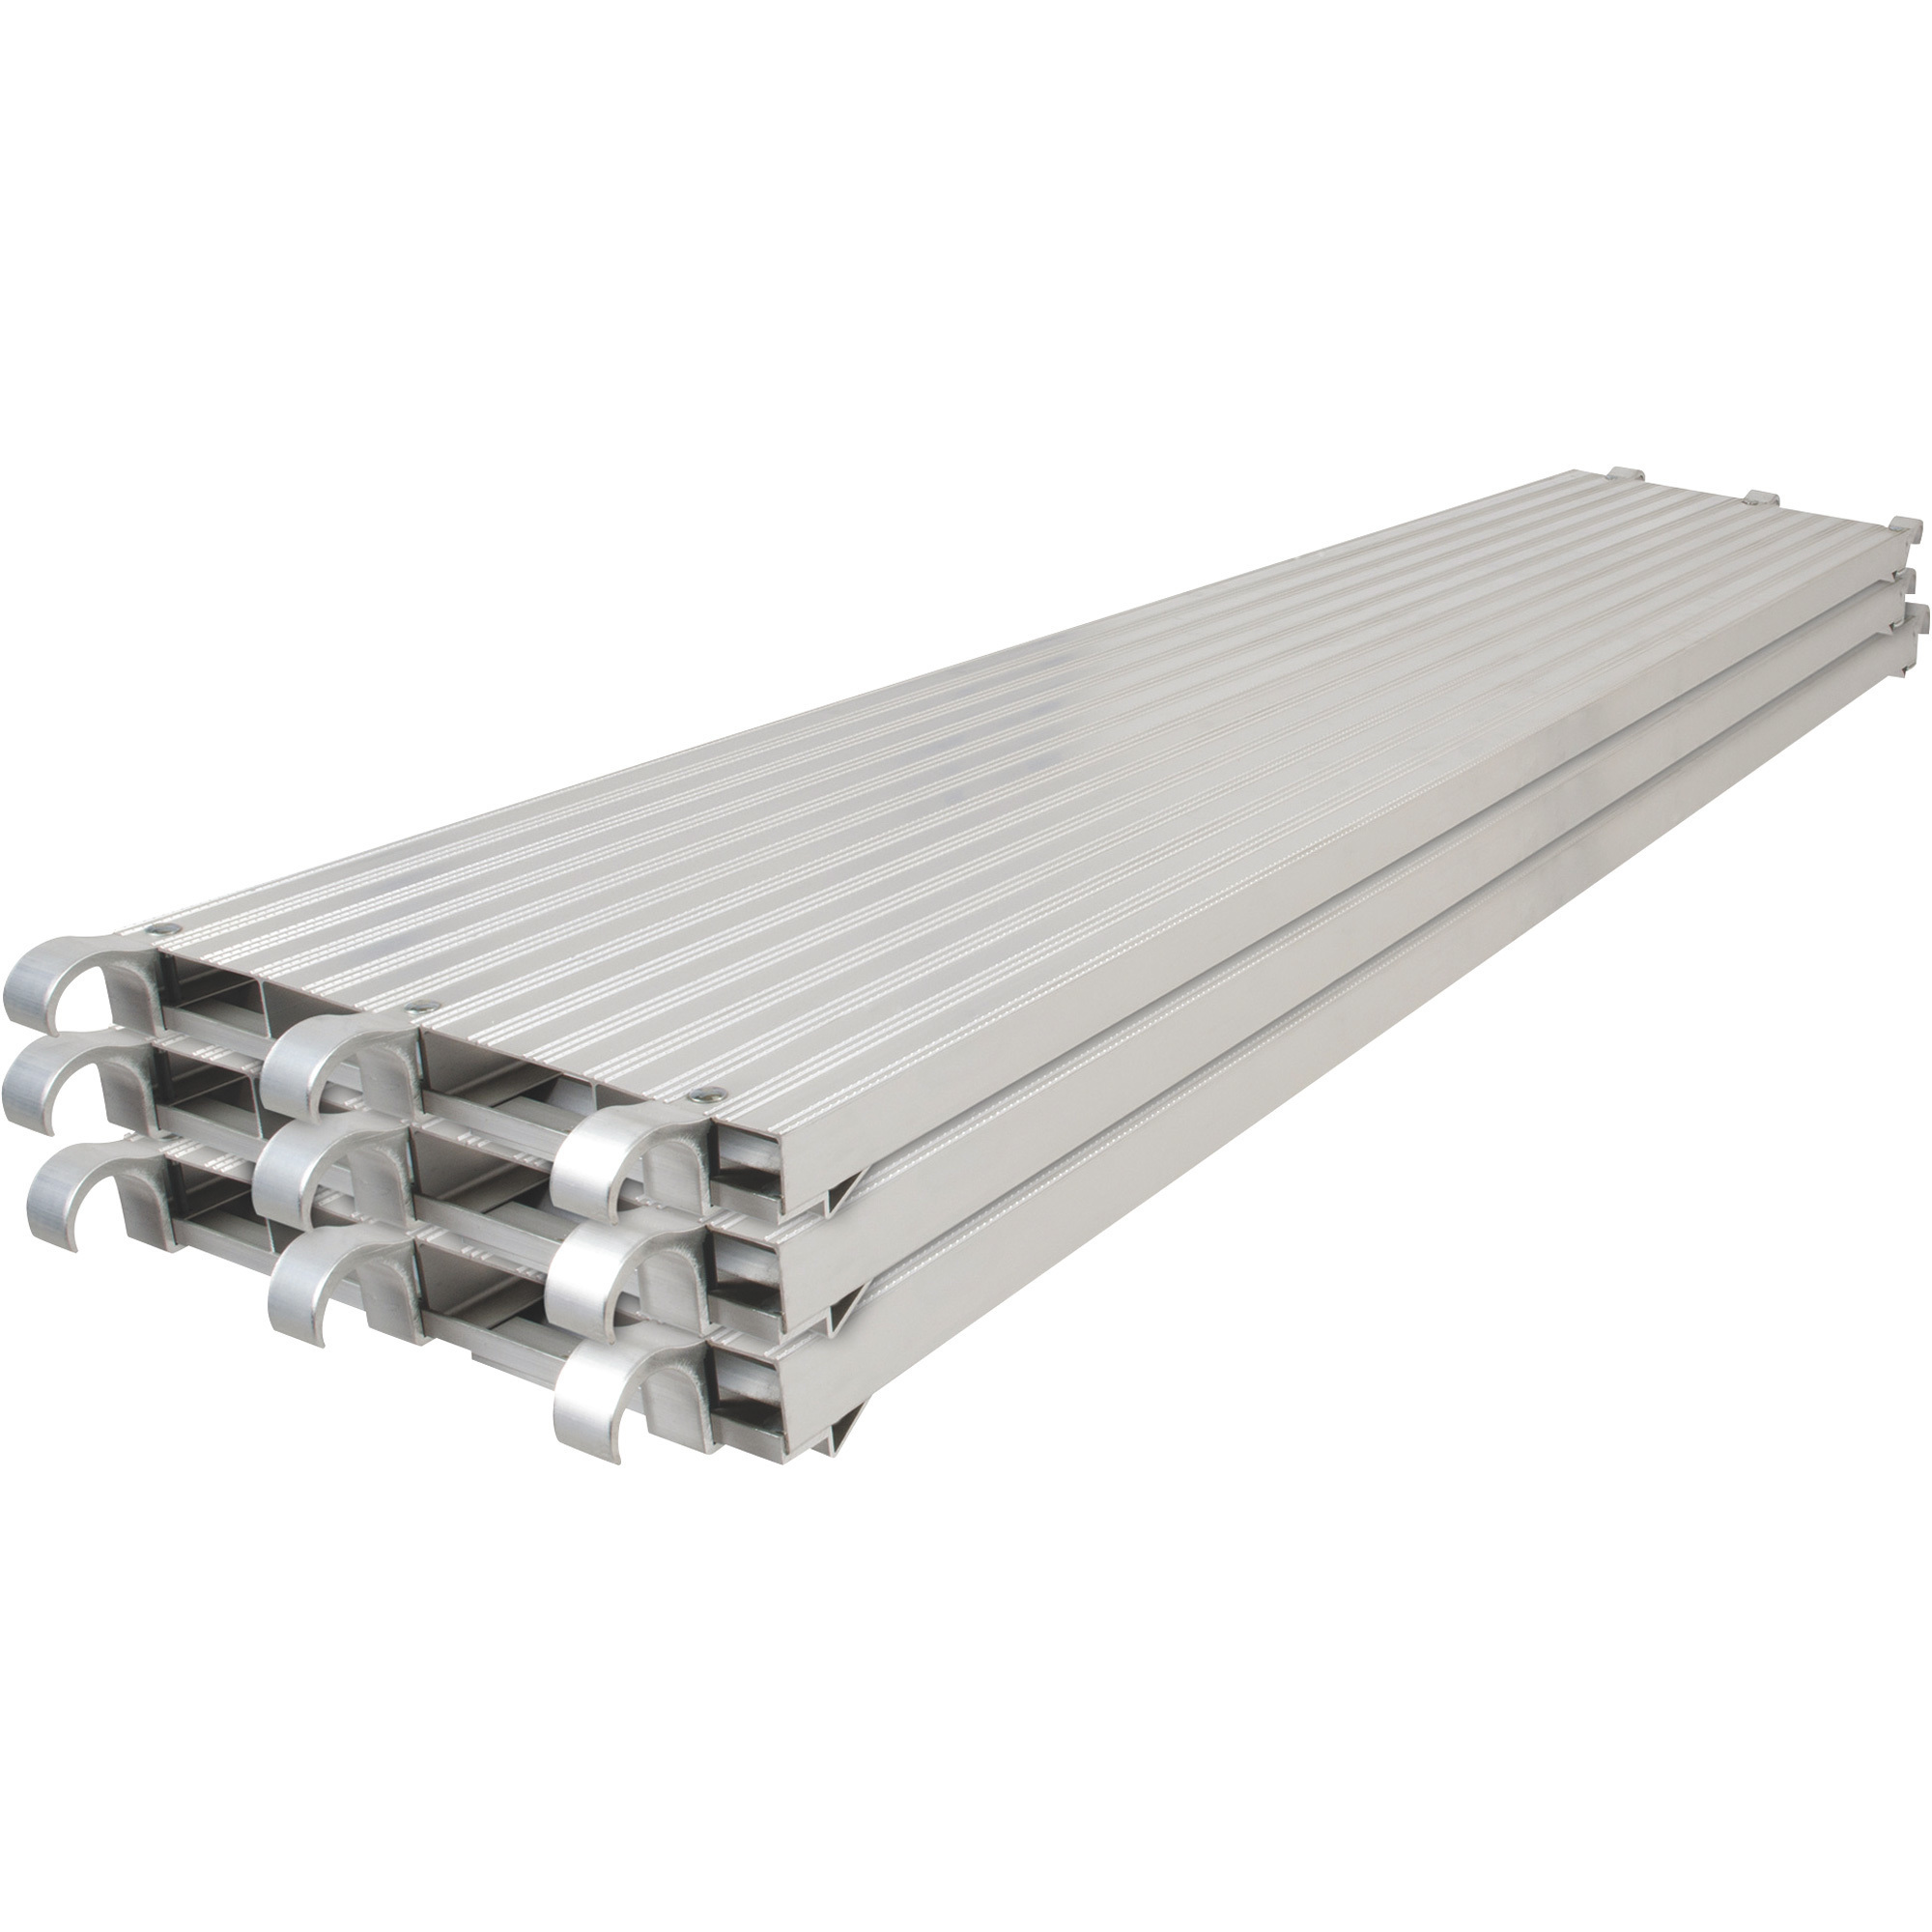 Metaltech Saferstack 7ft. x 19Inch All-Aluminum Scaffold Platform, 3-Pack, Model M-MPA719K3